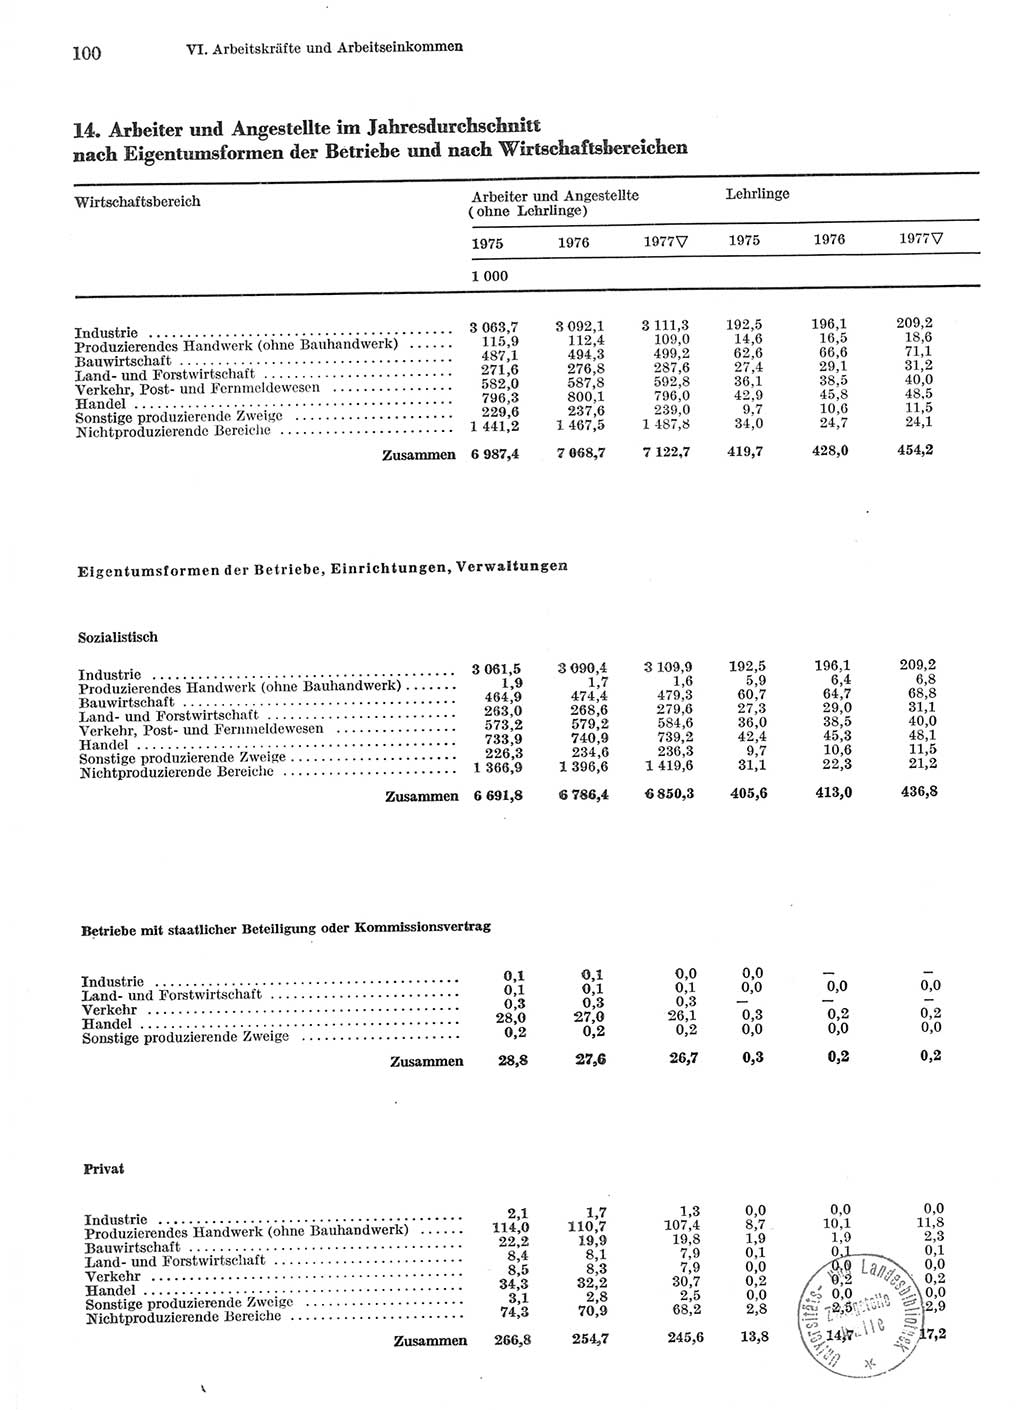 Statistisches Jahrbuch der Deutschen Demokratischen Republik (DDR) 1978, Seite 100 (Stat. Jb. DDR 1978, S. 100)